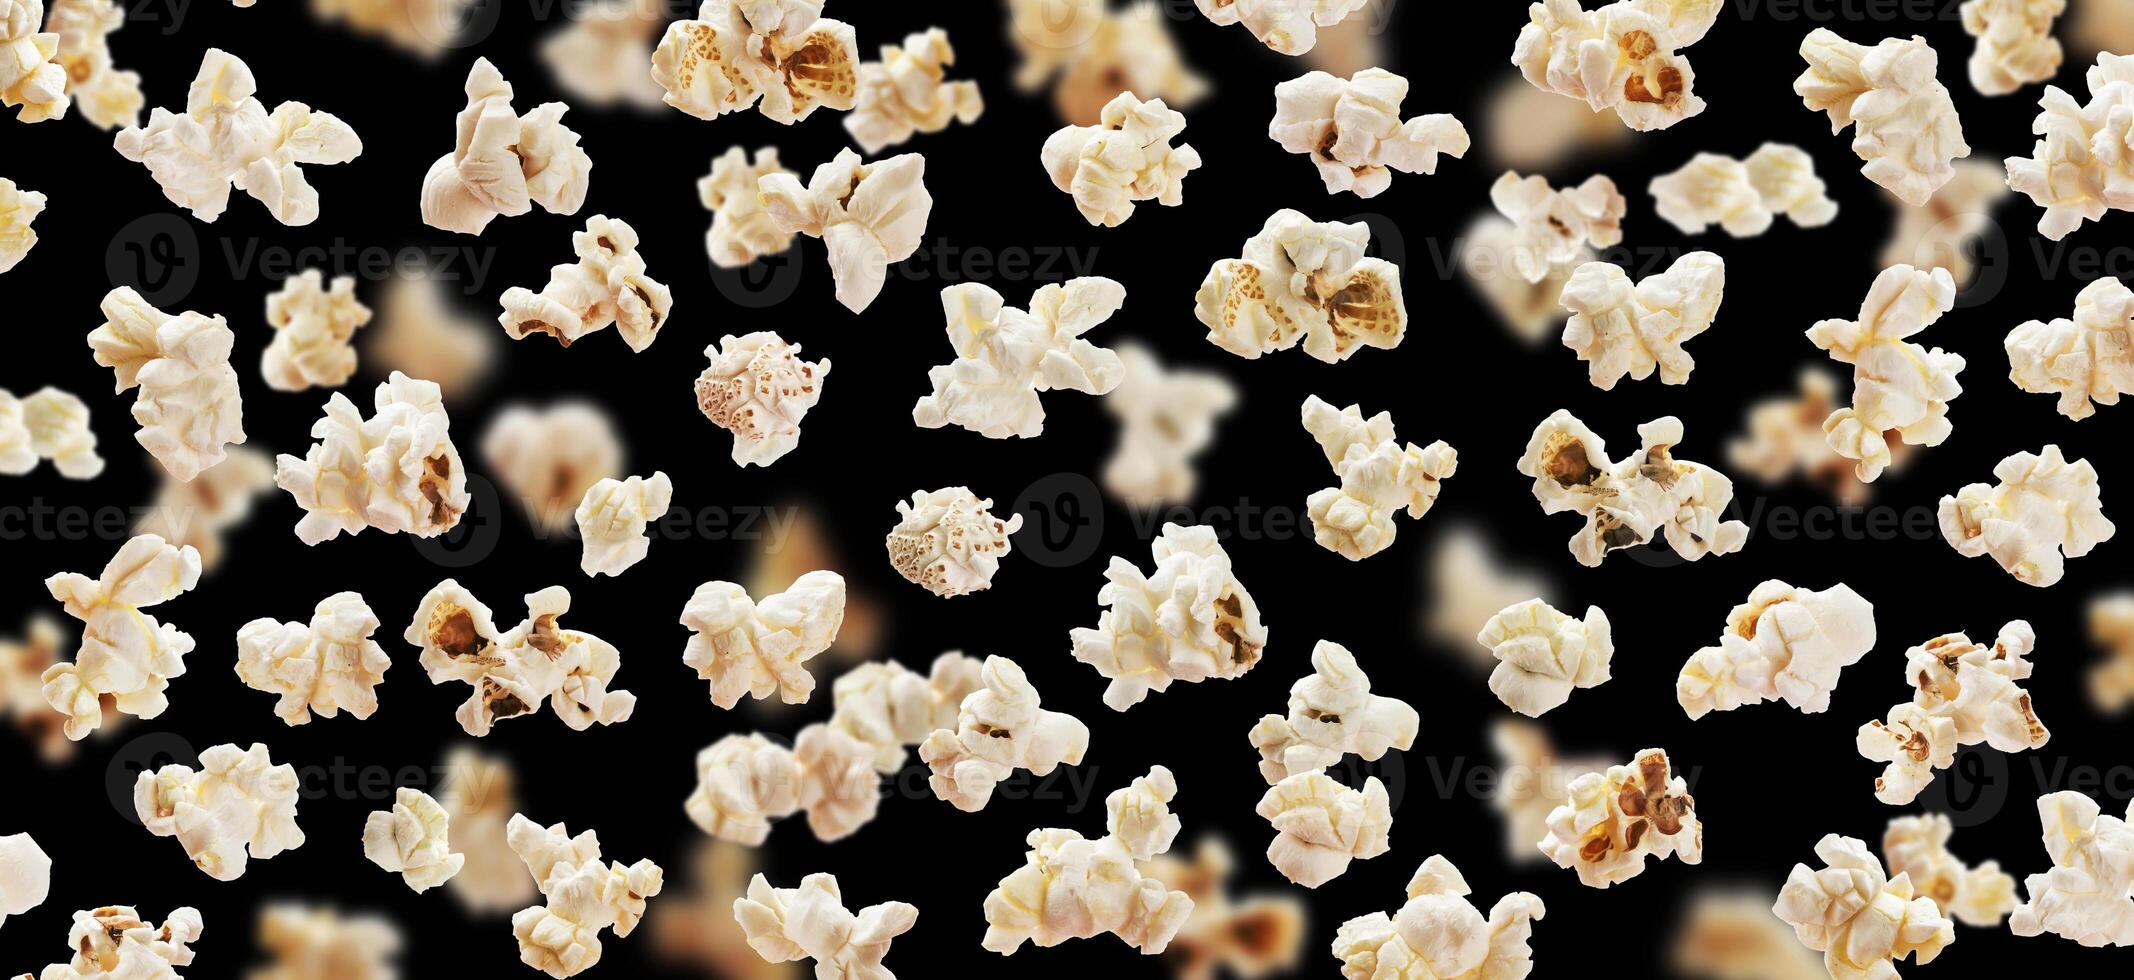 Flying popcorn isolated on black background photo